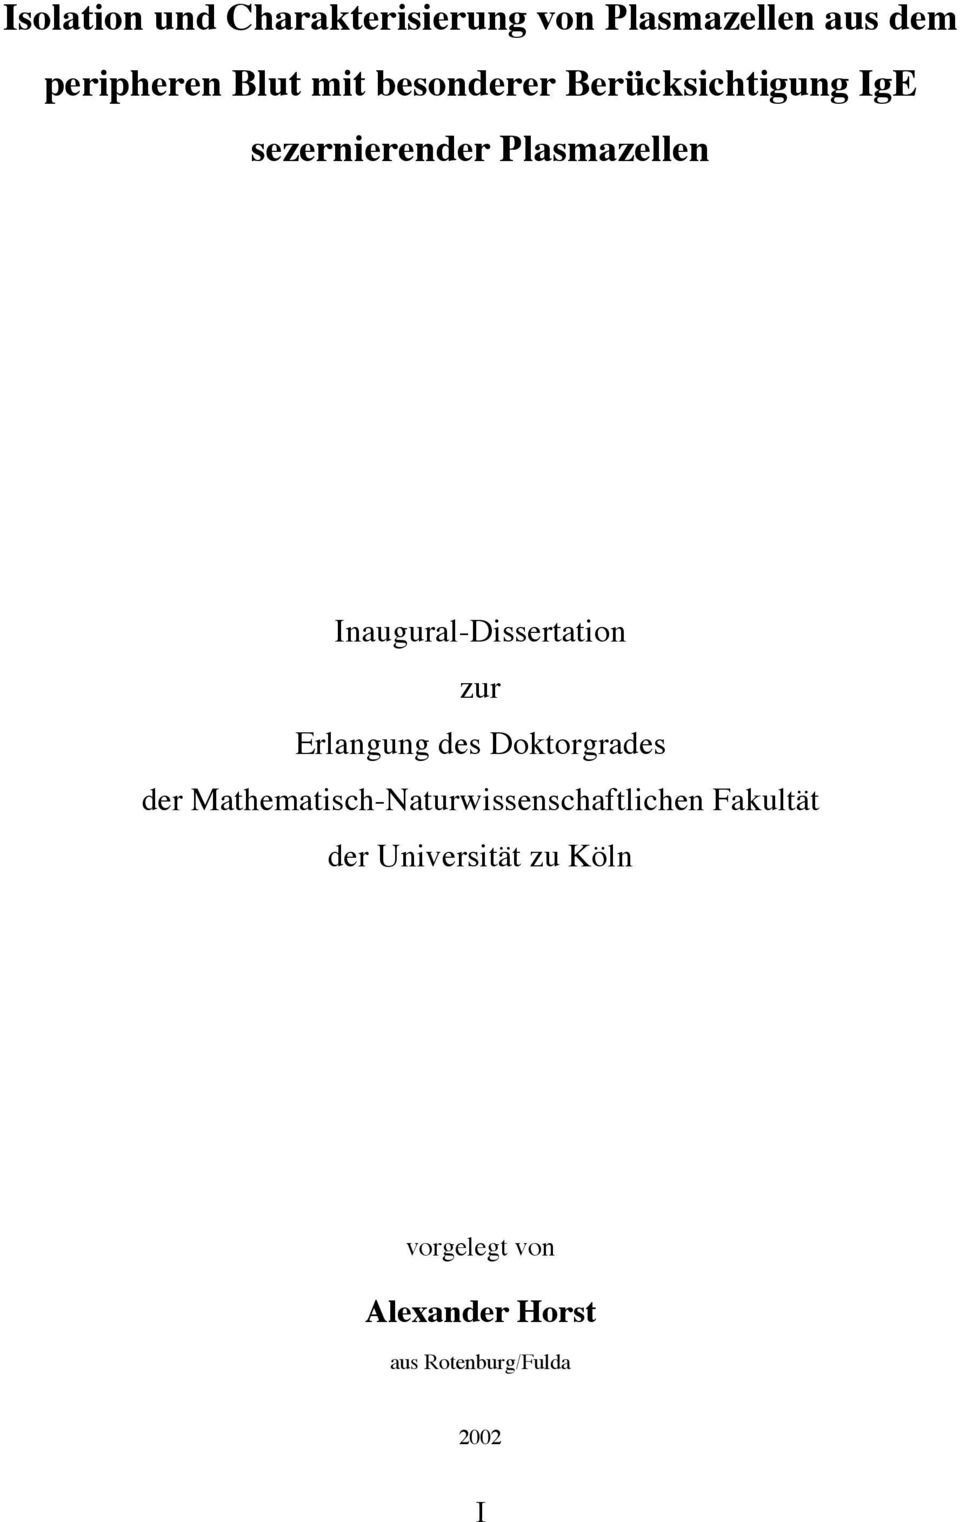 Inaugural-Dissertation zur Erlangung des Doktorgrades der